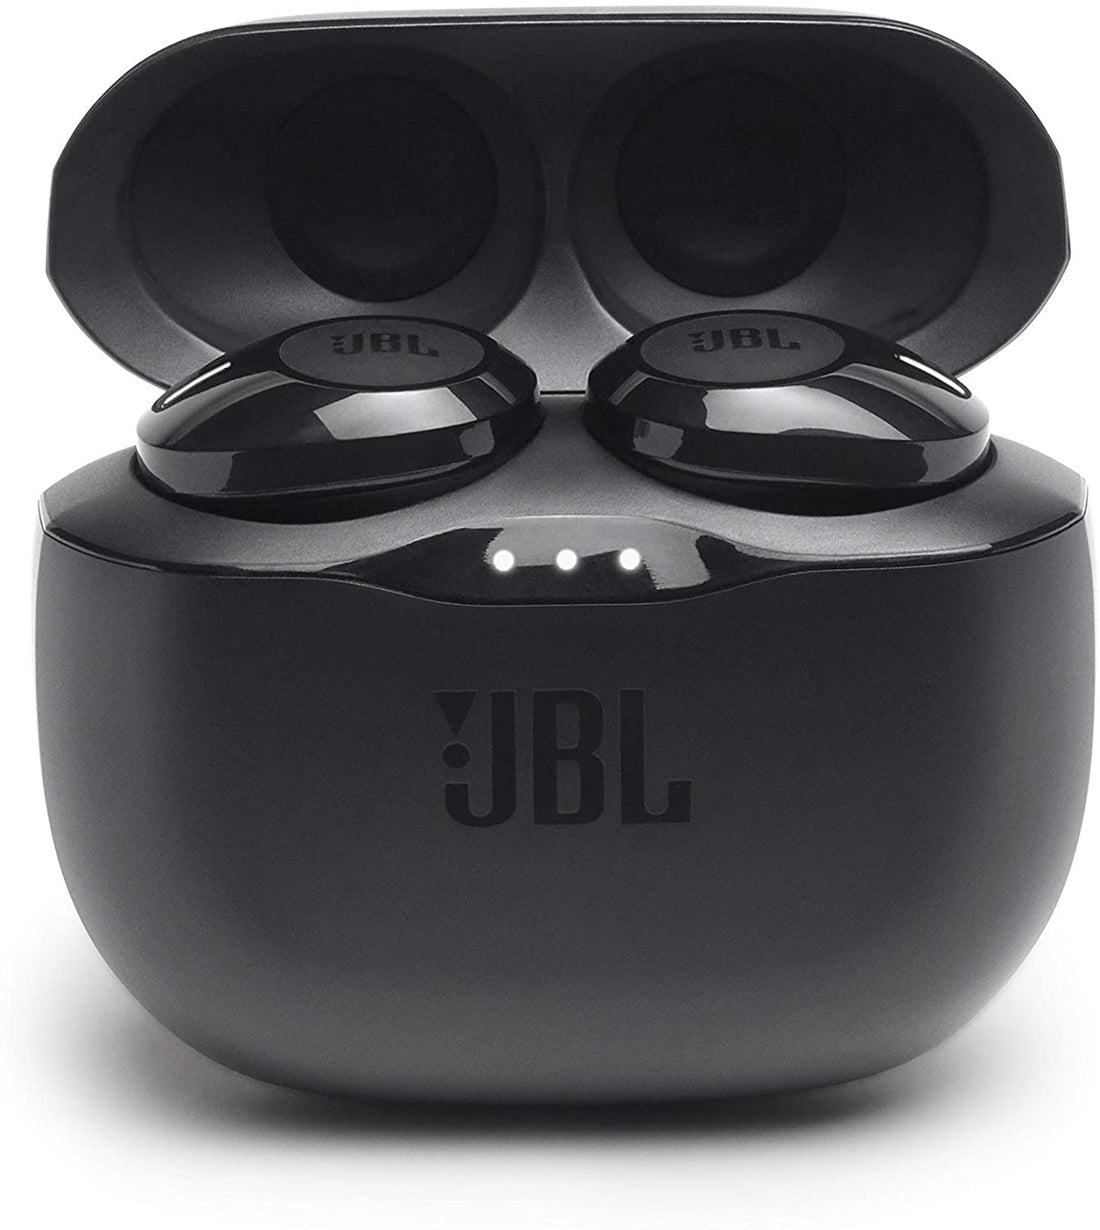 JBL Tune 125TWS True Wireless In-Ear Bluetooth Headphones - Black (New)